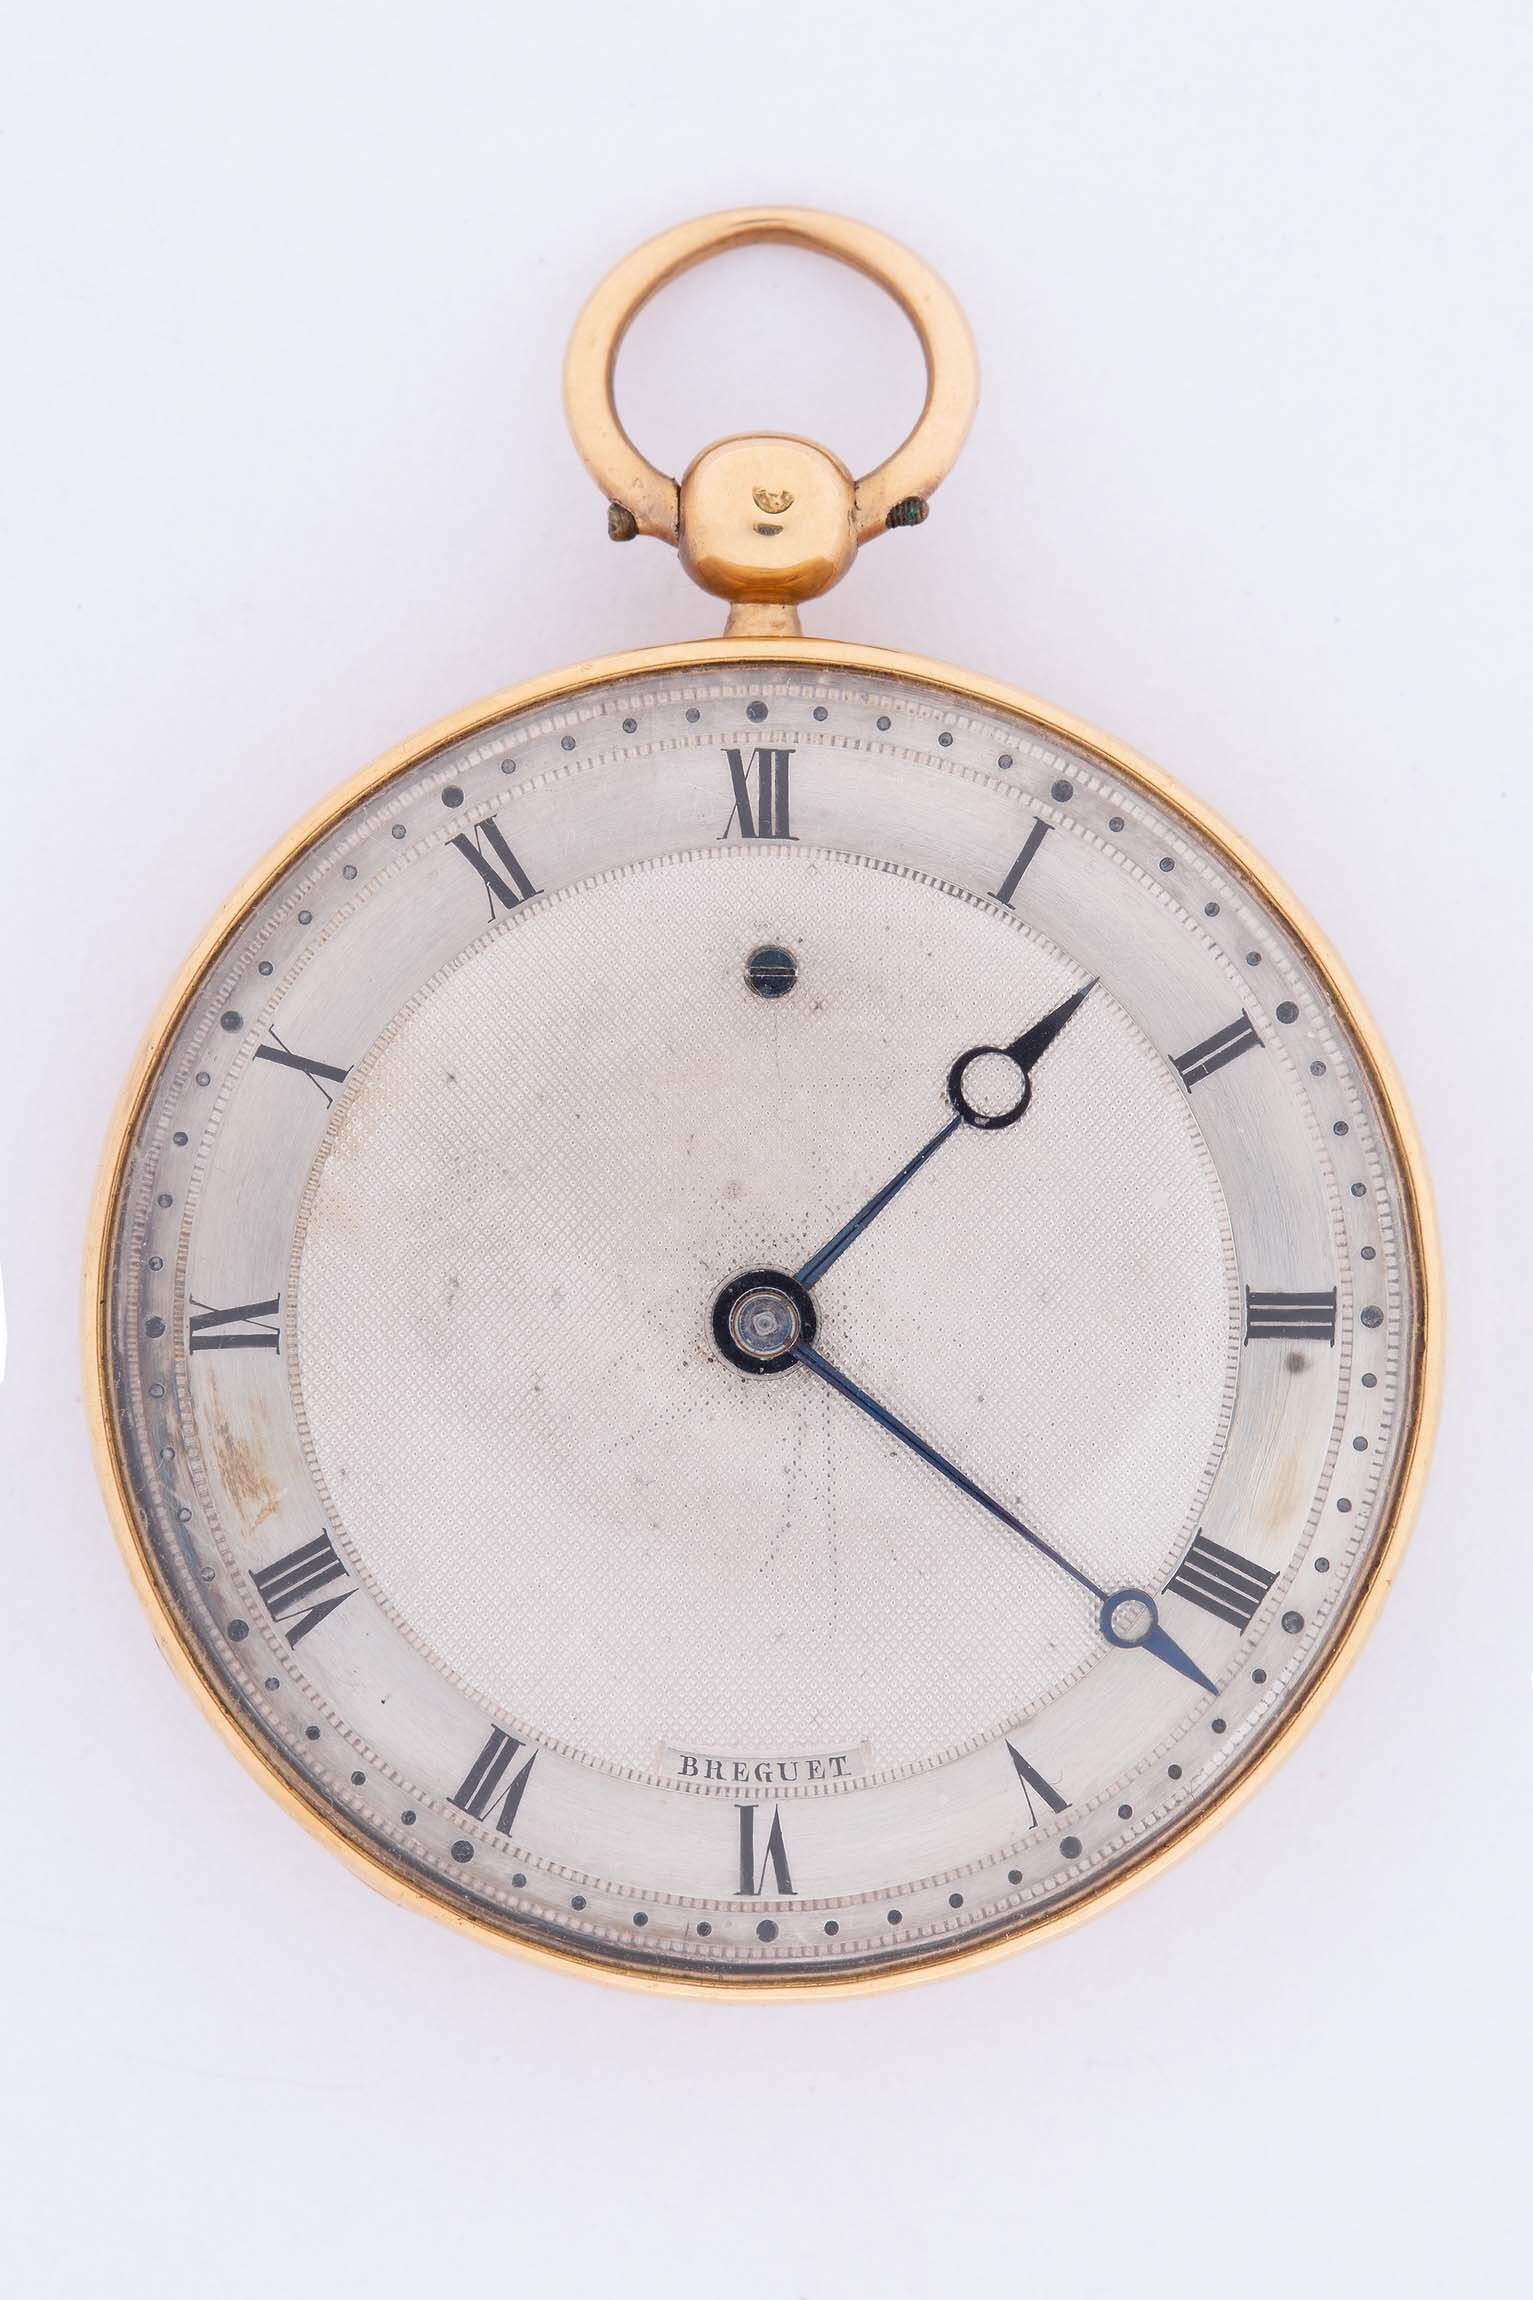 Taschenuhr, Breguet, Paris, um 1820 (Deutsches Uhrenmuseum CC BY-SA)